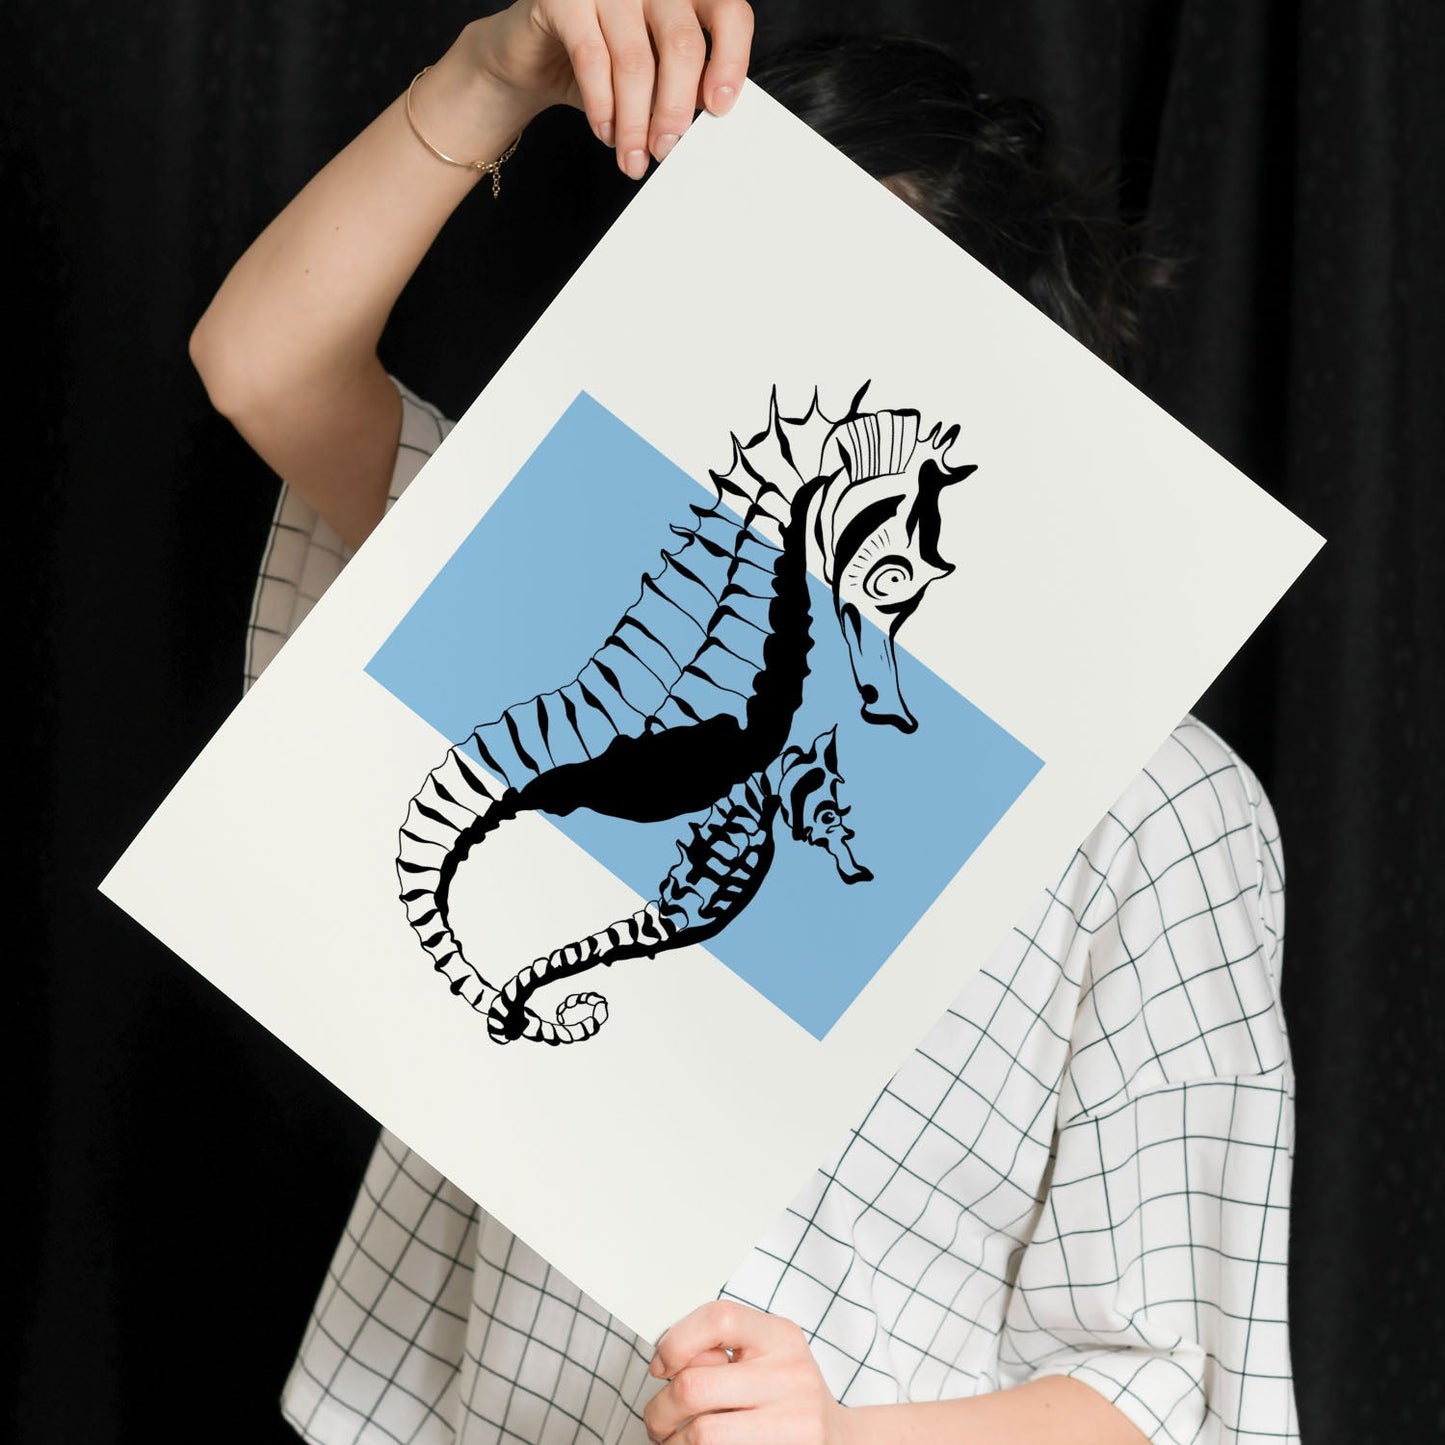 Seahorses-Artwork-Nacnic-Nacnic Estudio SL